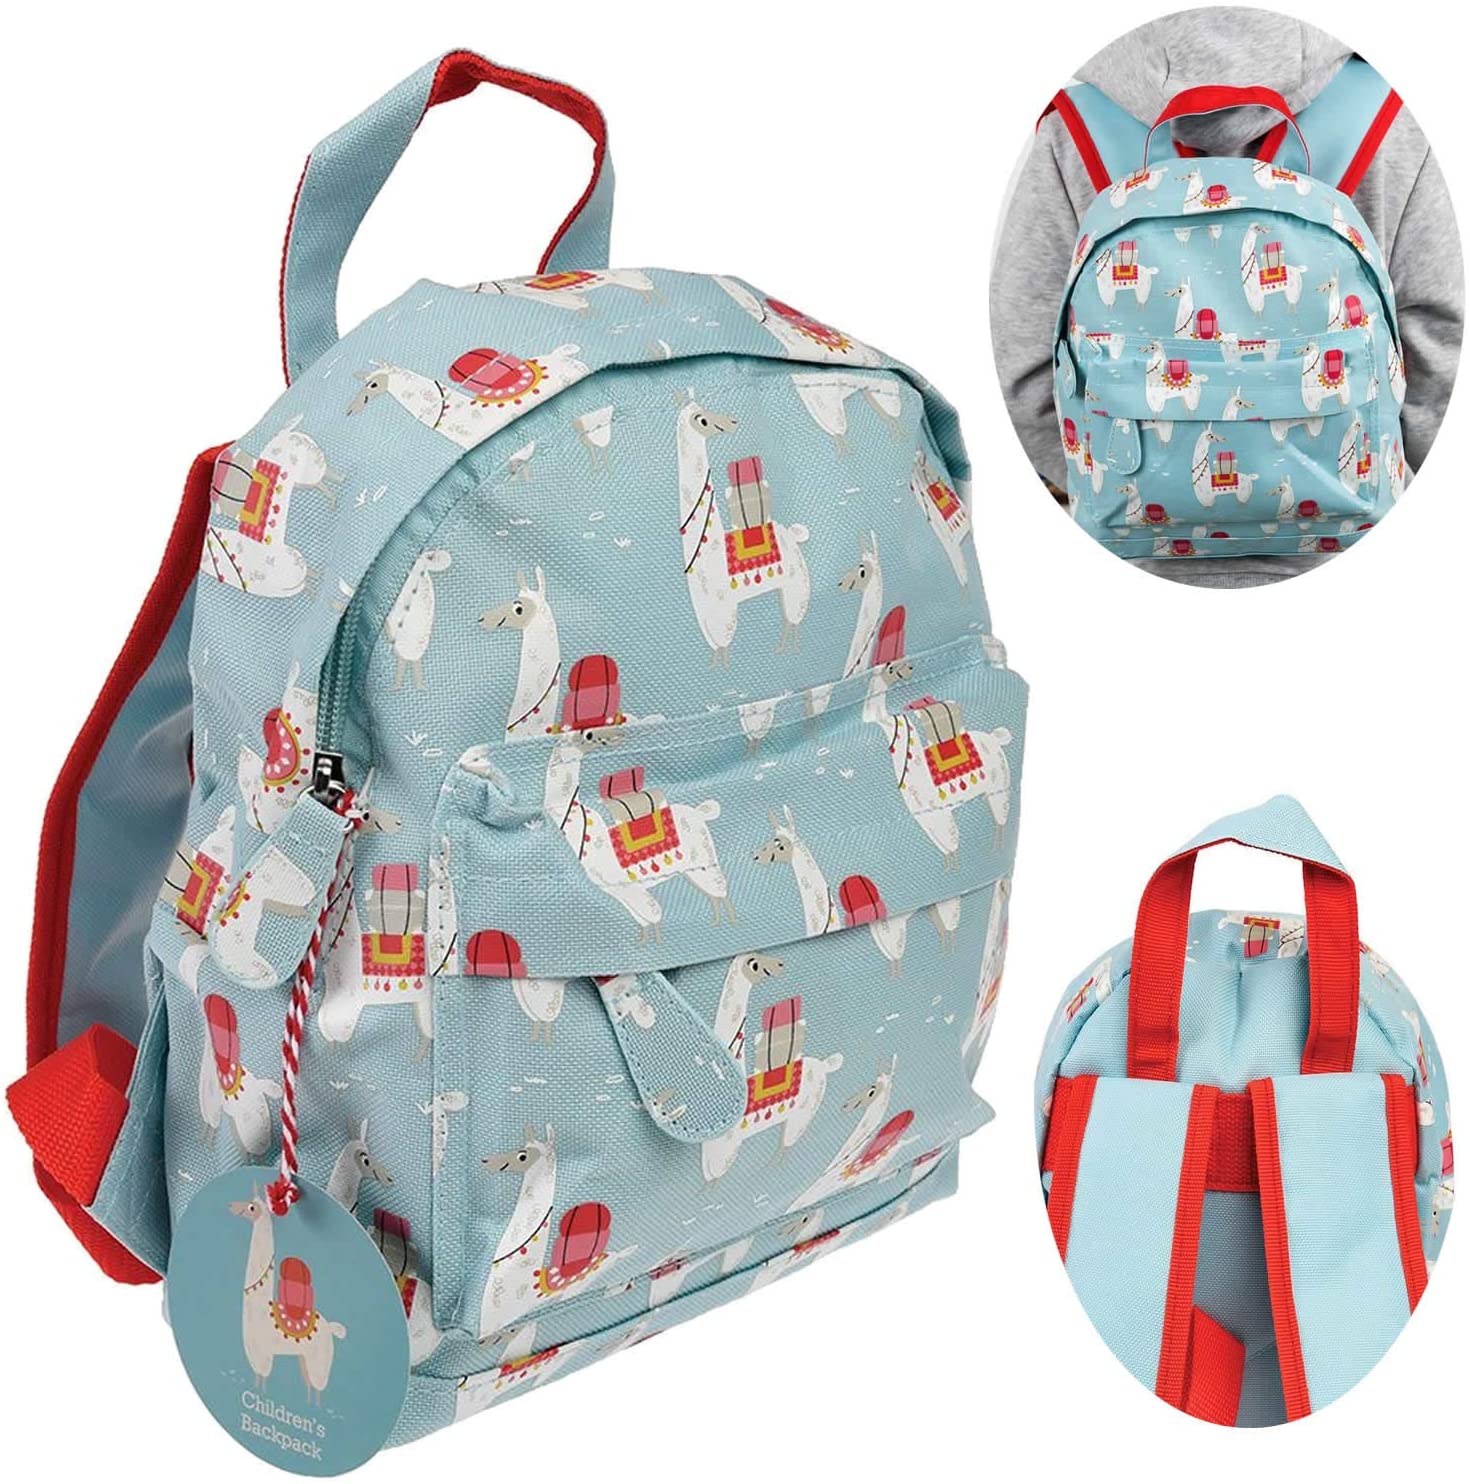 LS Life Style Children's Rucksack Nursery Bag Preschool Rucksack LS-906200